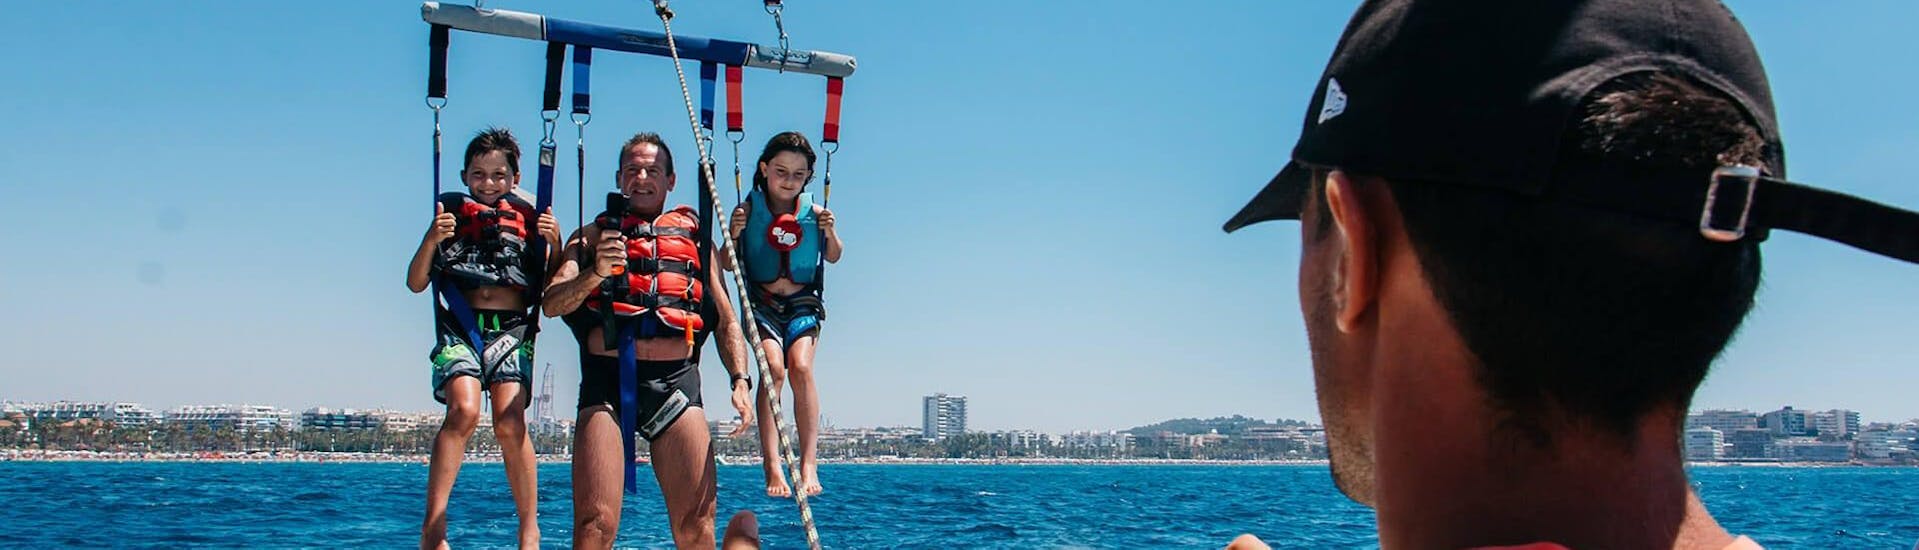 Una familia disfruta de las hermosas vistas sobre el mar duranteel Parasailing en Salou y Cambrils organizado por la Estació Nàutica Costa Daurada.